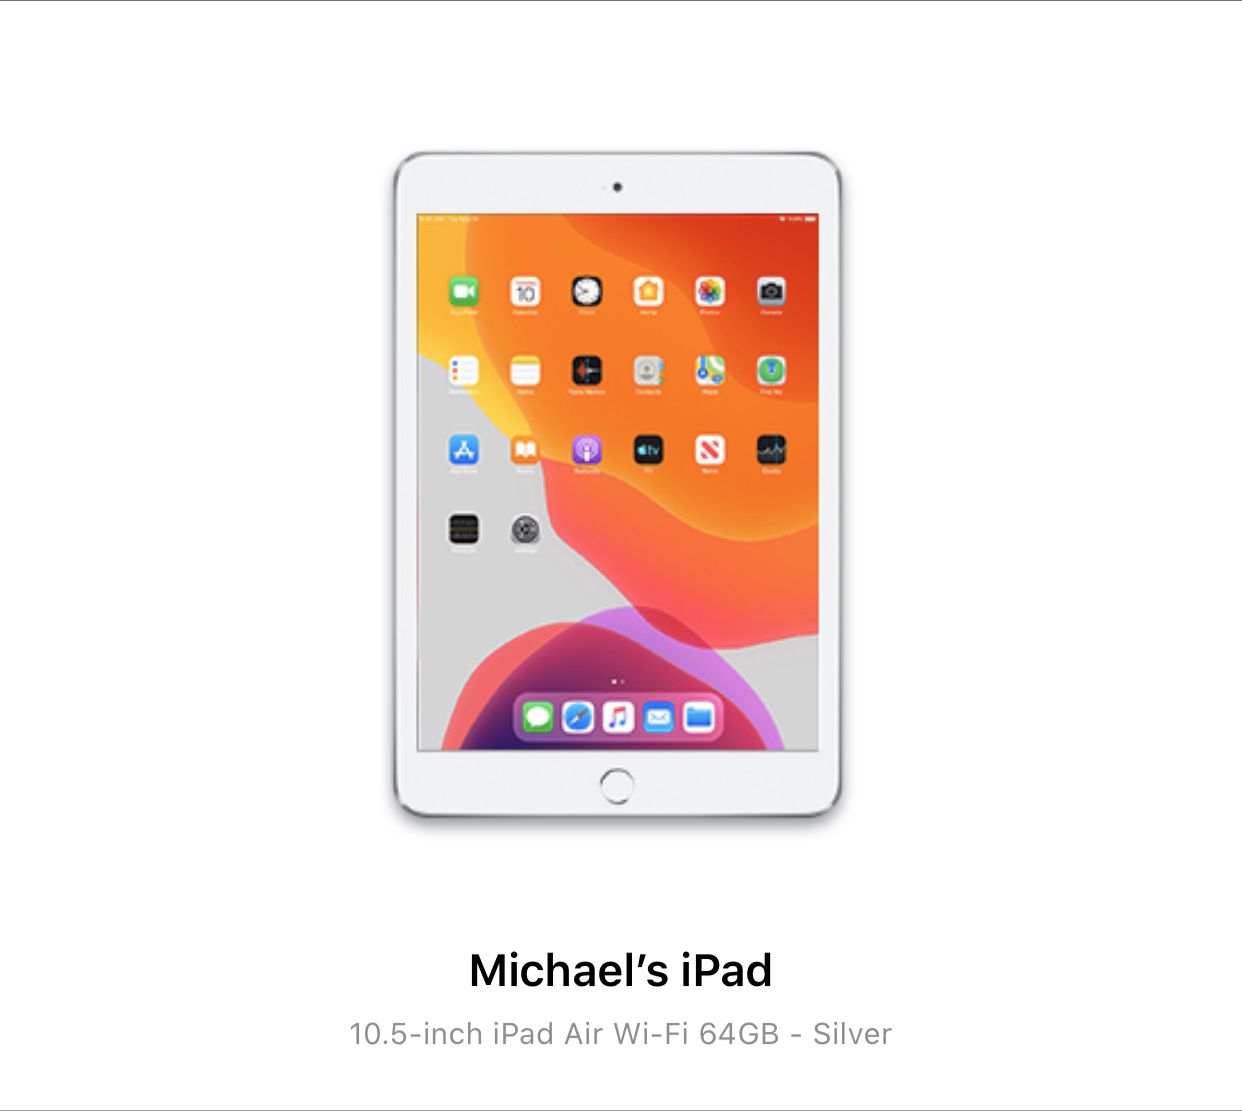 New 2019 iPad Air (WiFi) in box!